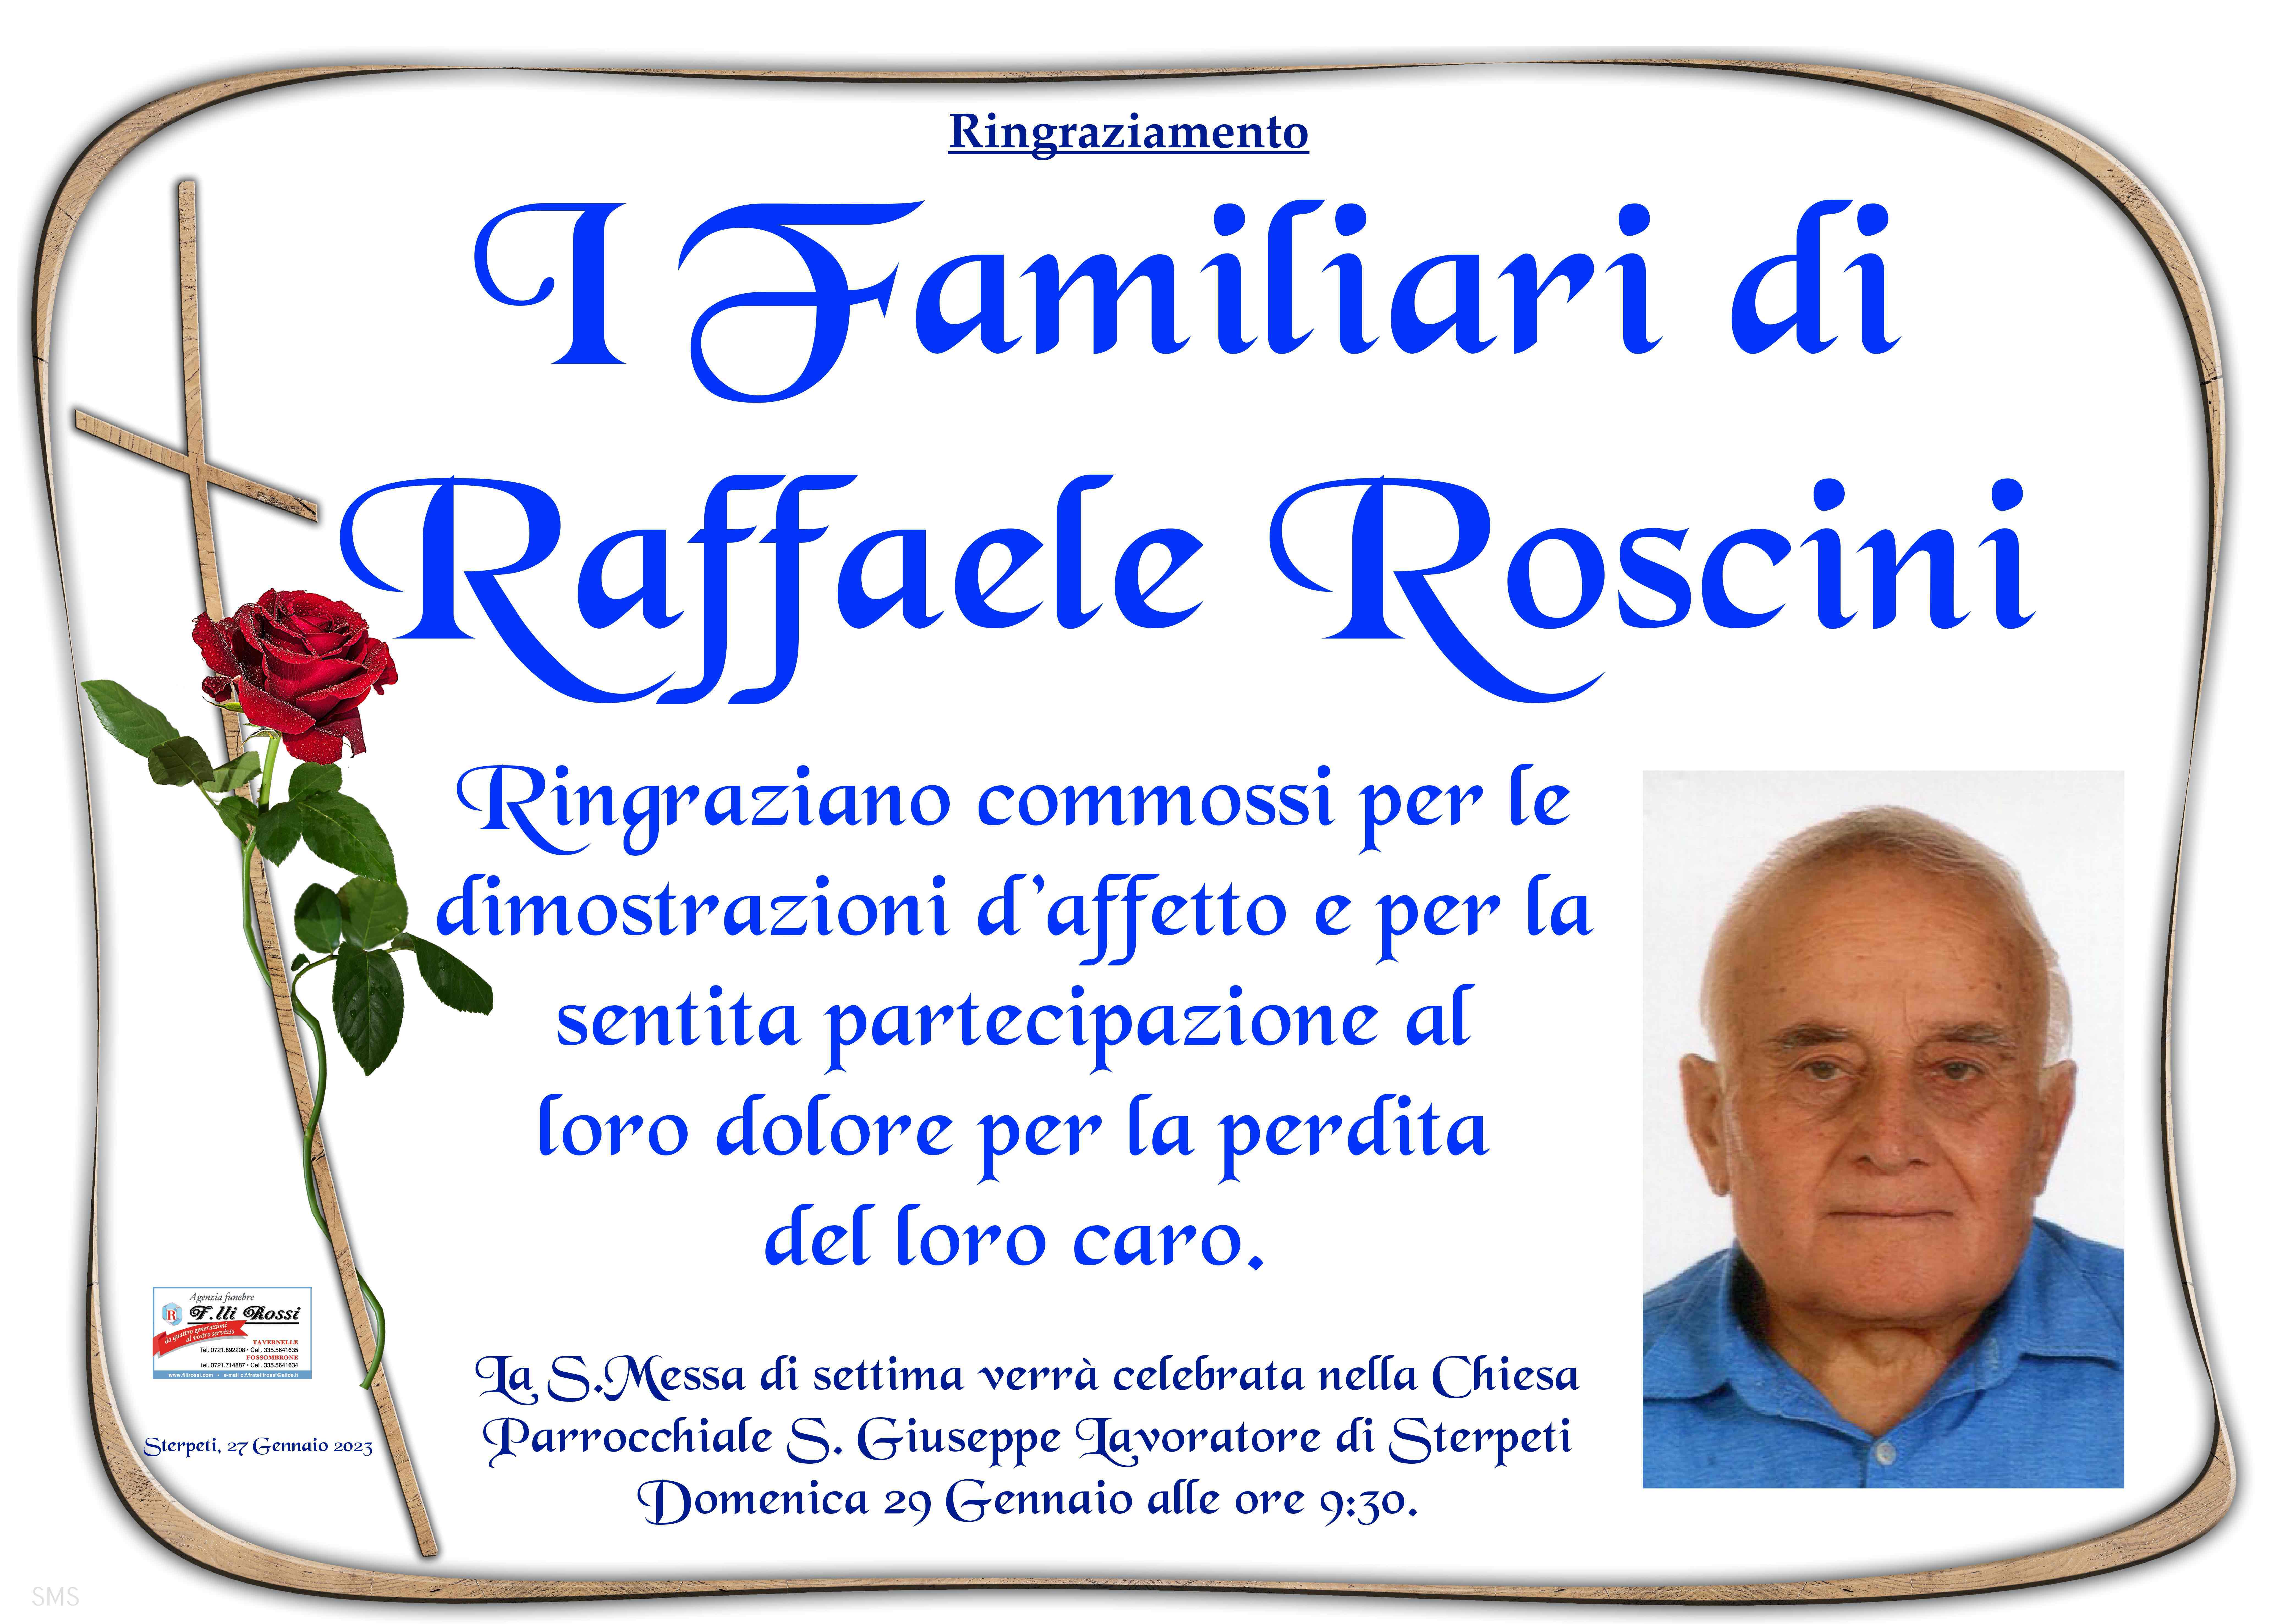 Raffaele Roscini